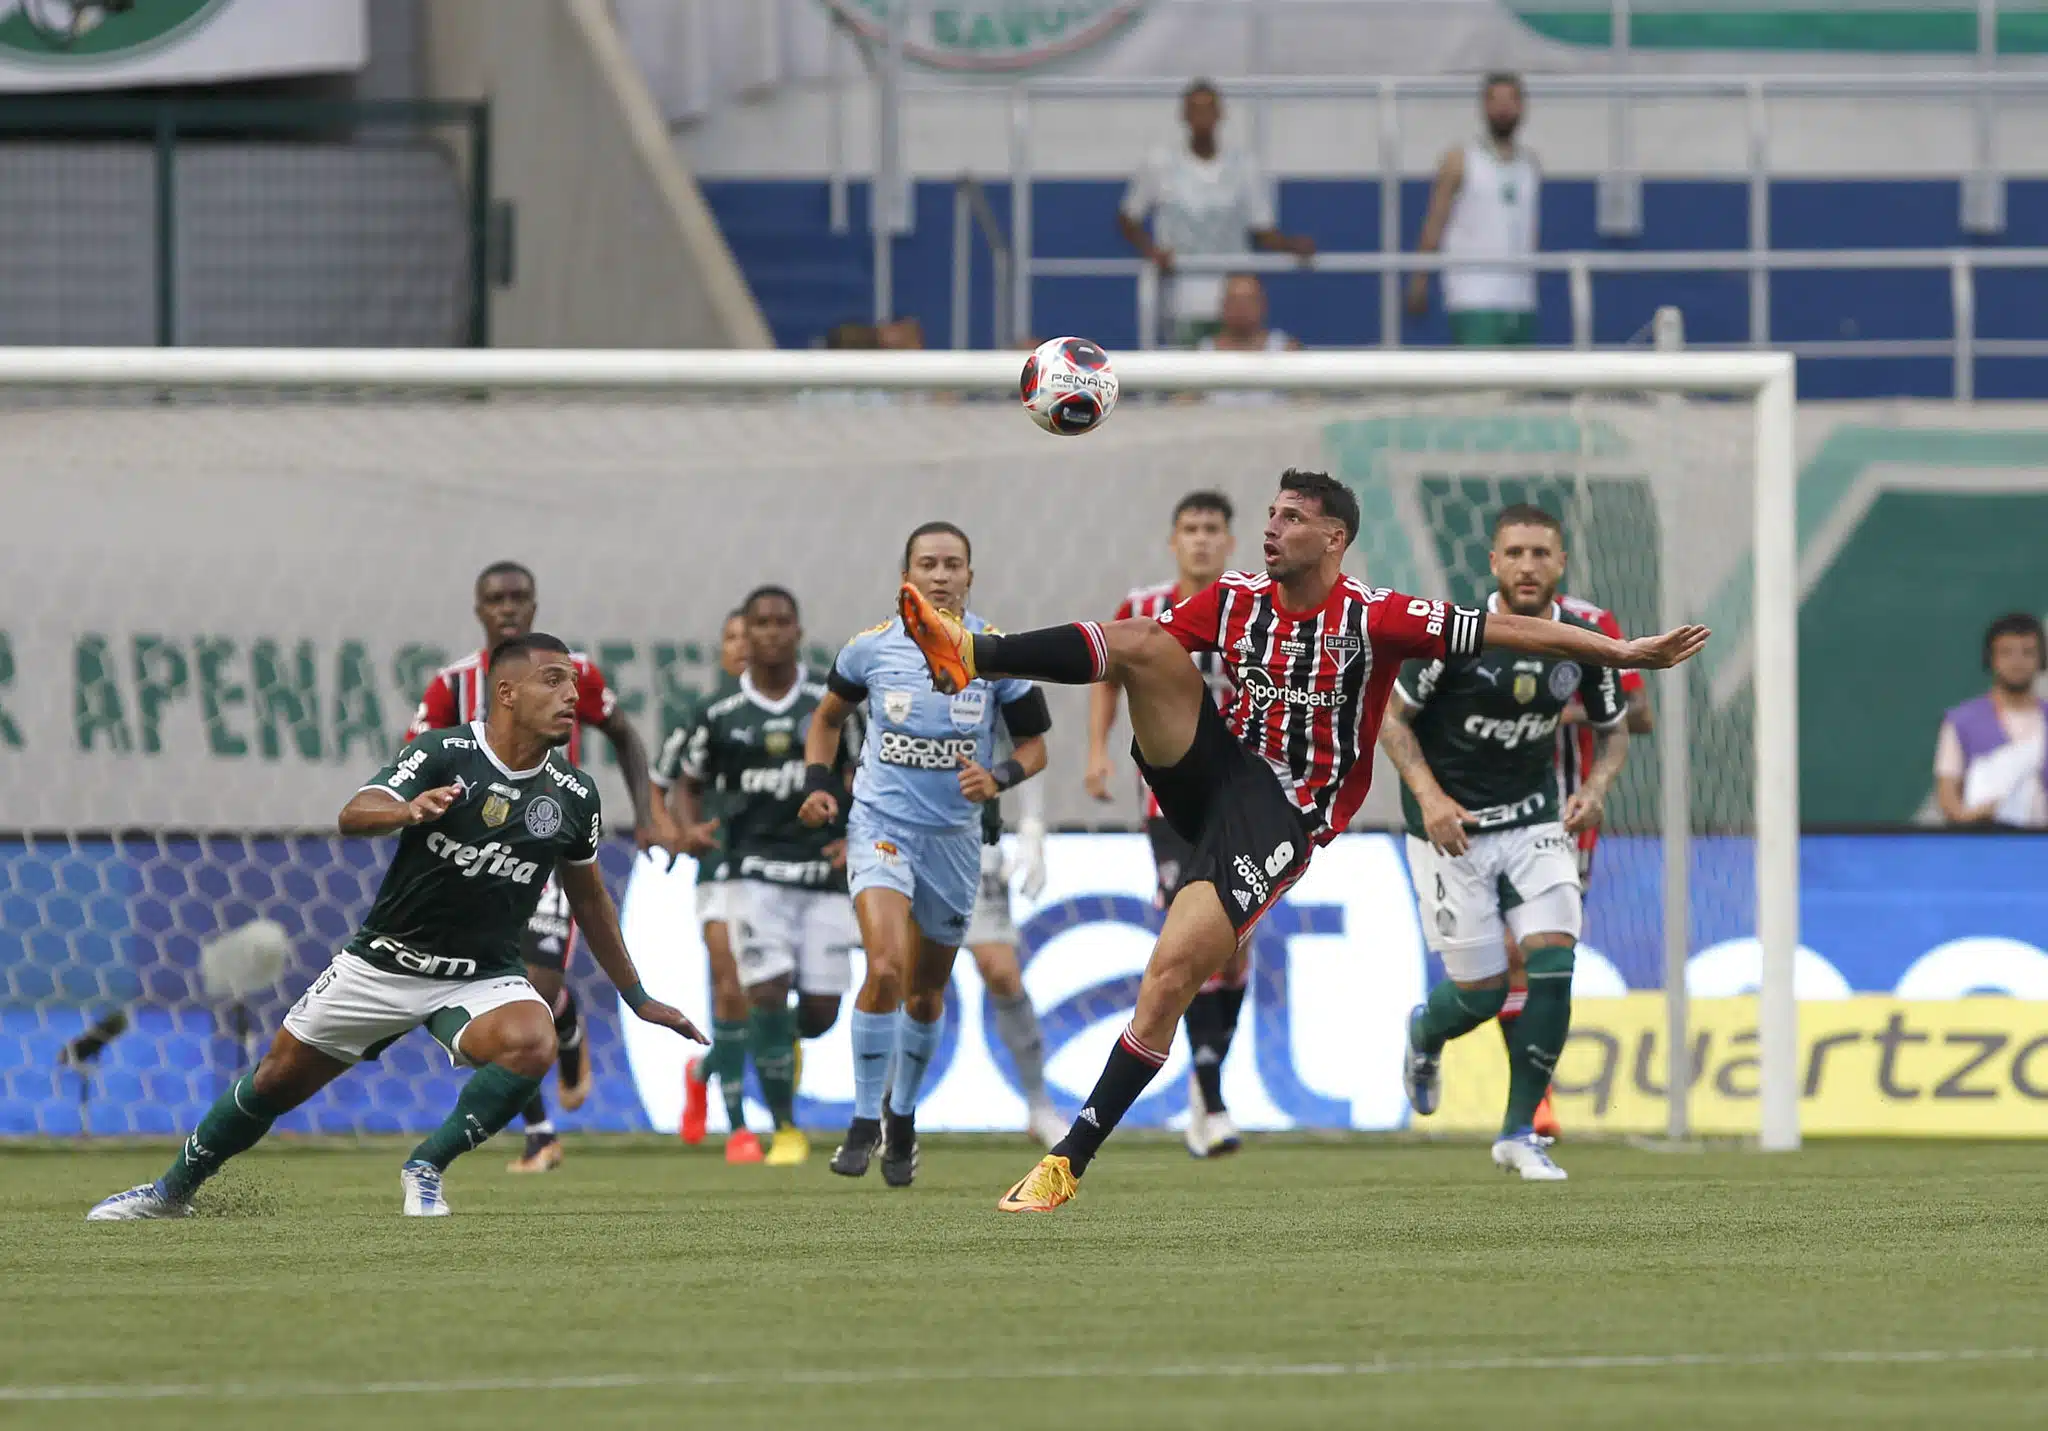 Até o elenco do São Paulo é melhor do que o do Palmeiras", afirma jornalista